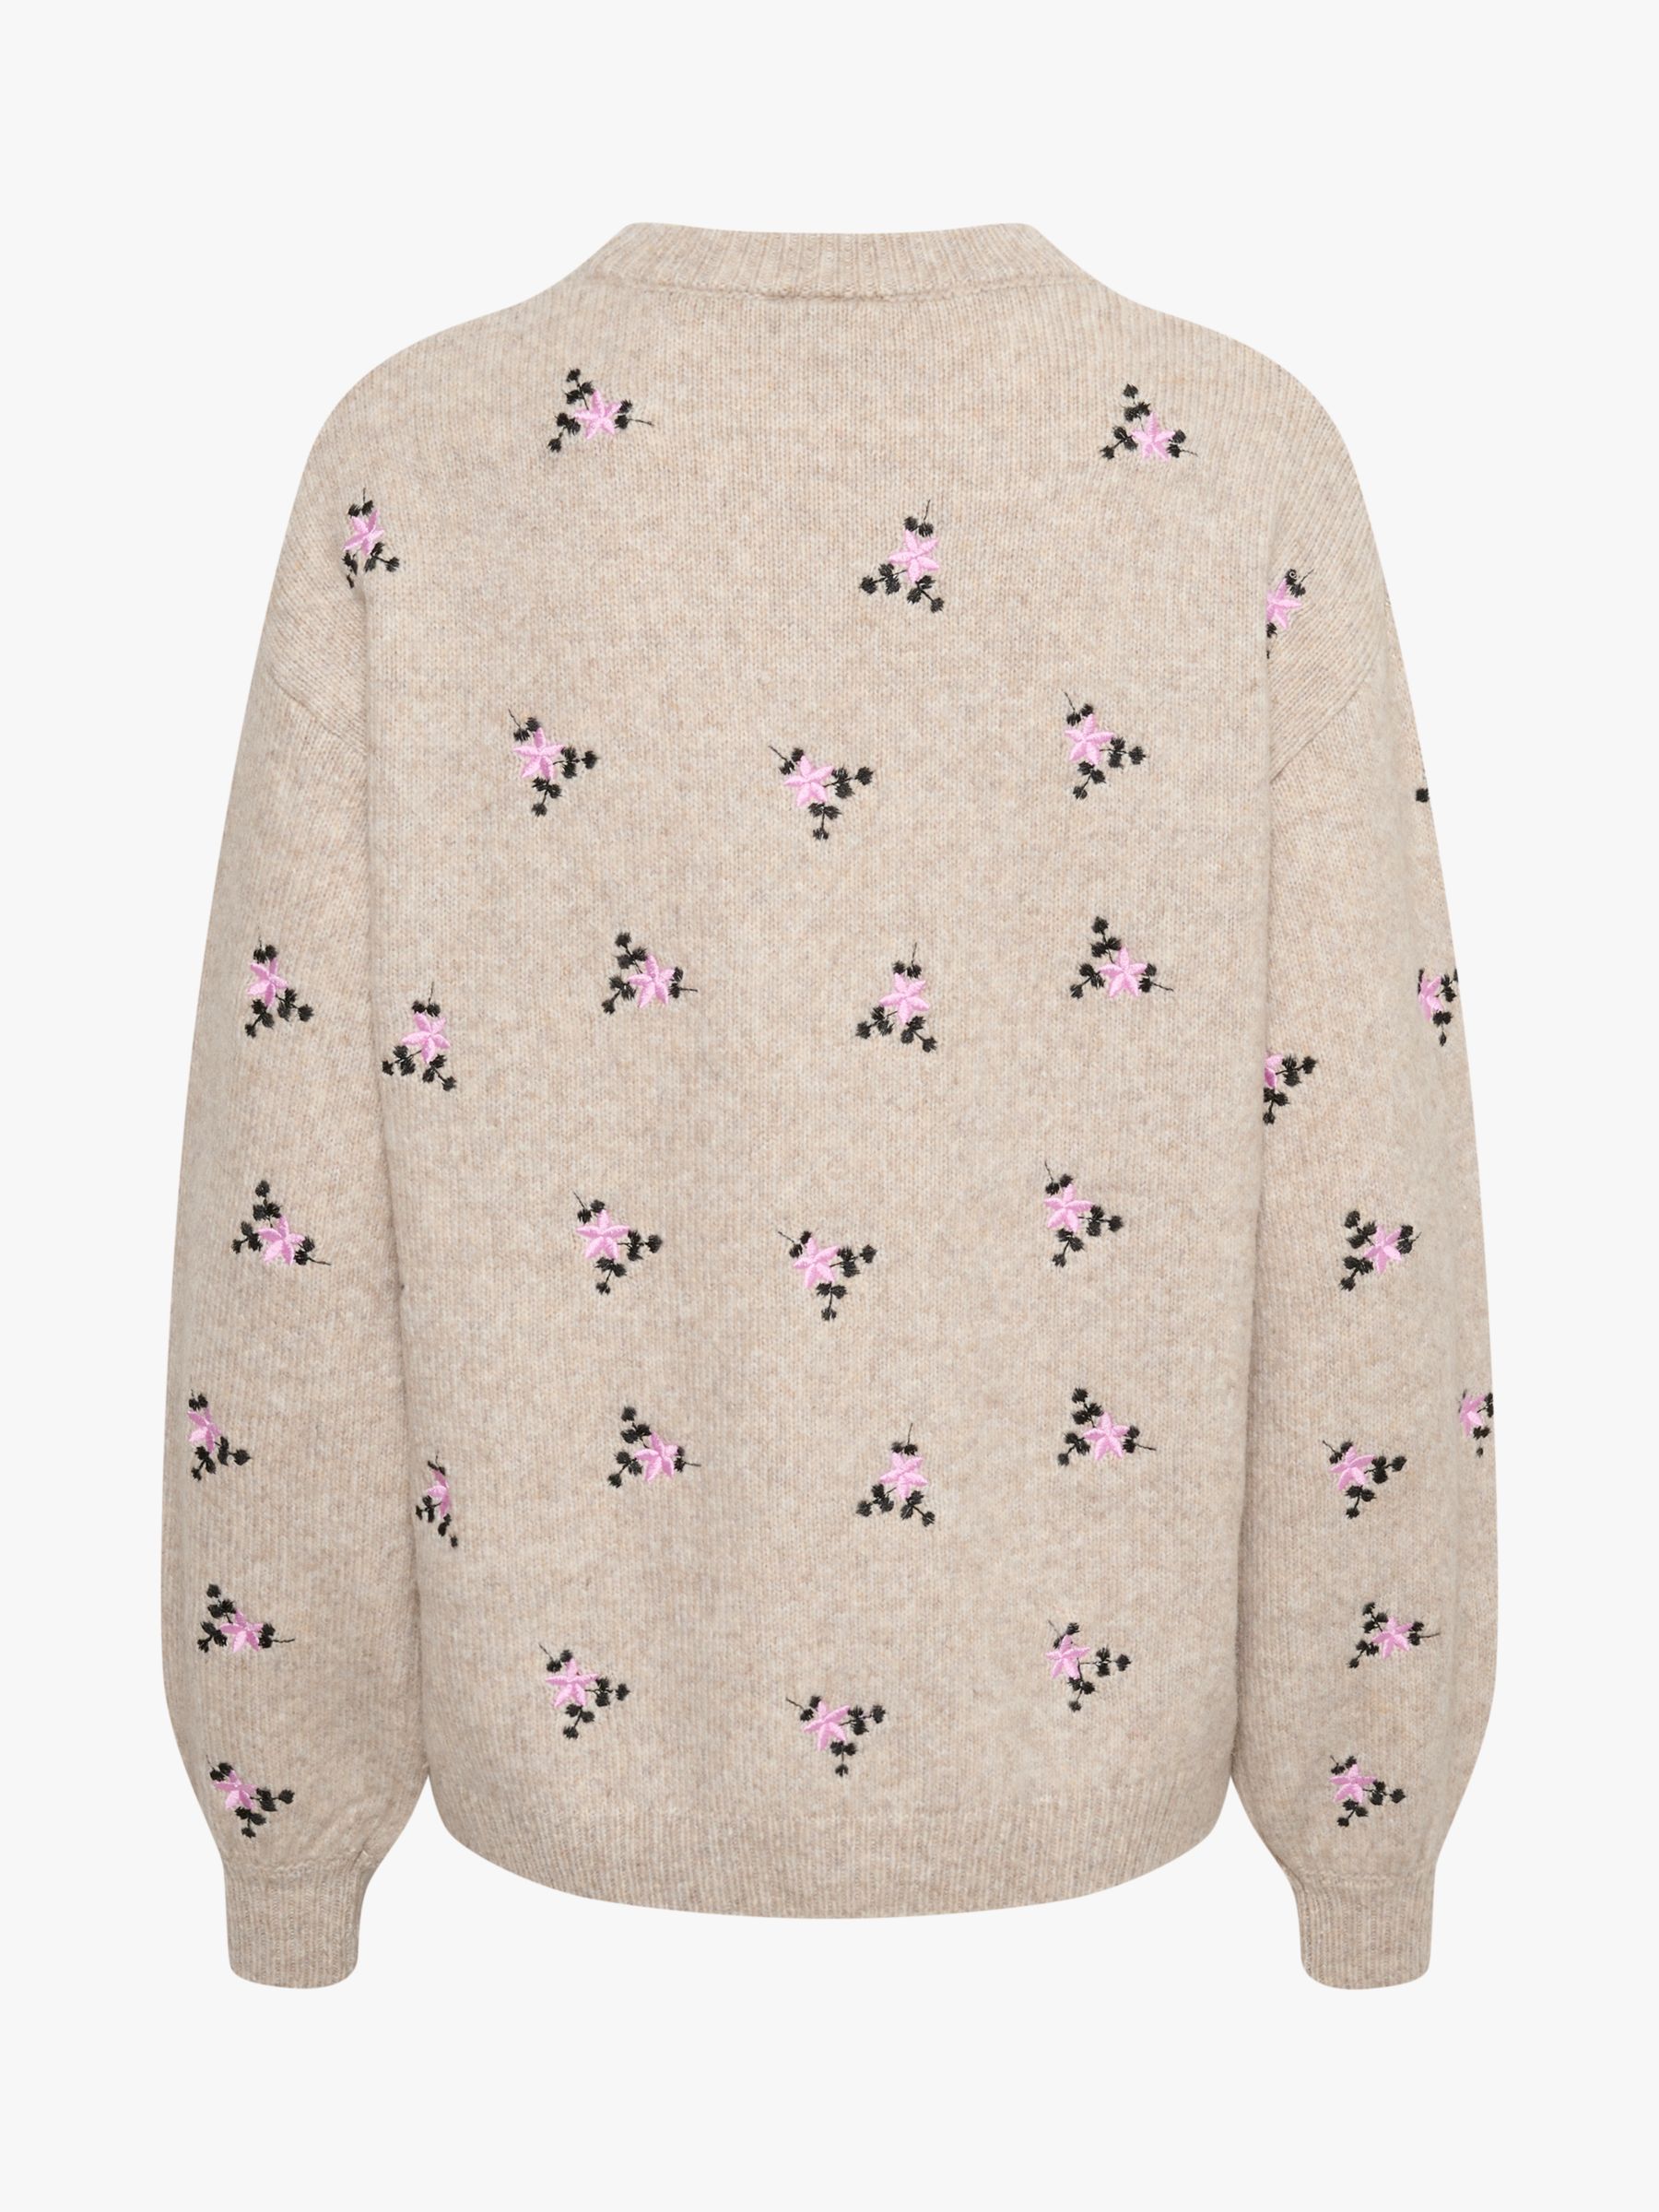 Buy KAFFE Josie Embroidered Knit Pullover Jumper, Sand Melange Online at johnlewis.com